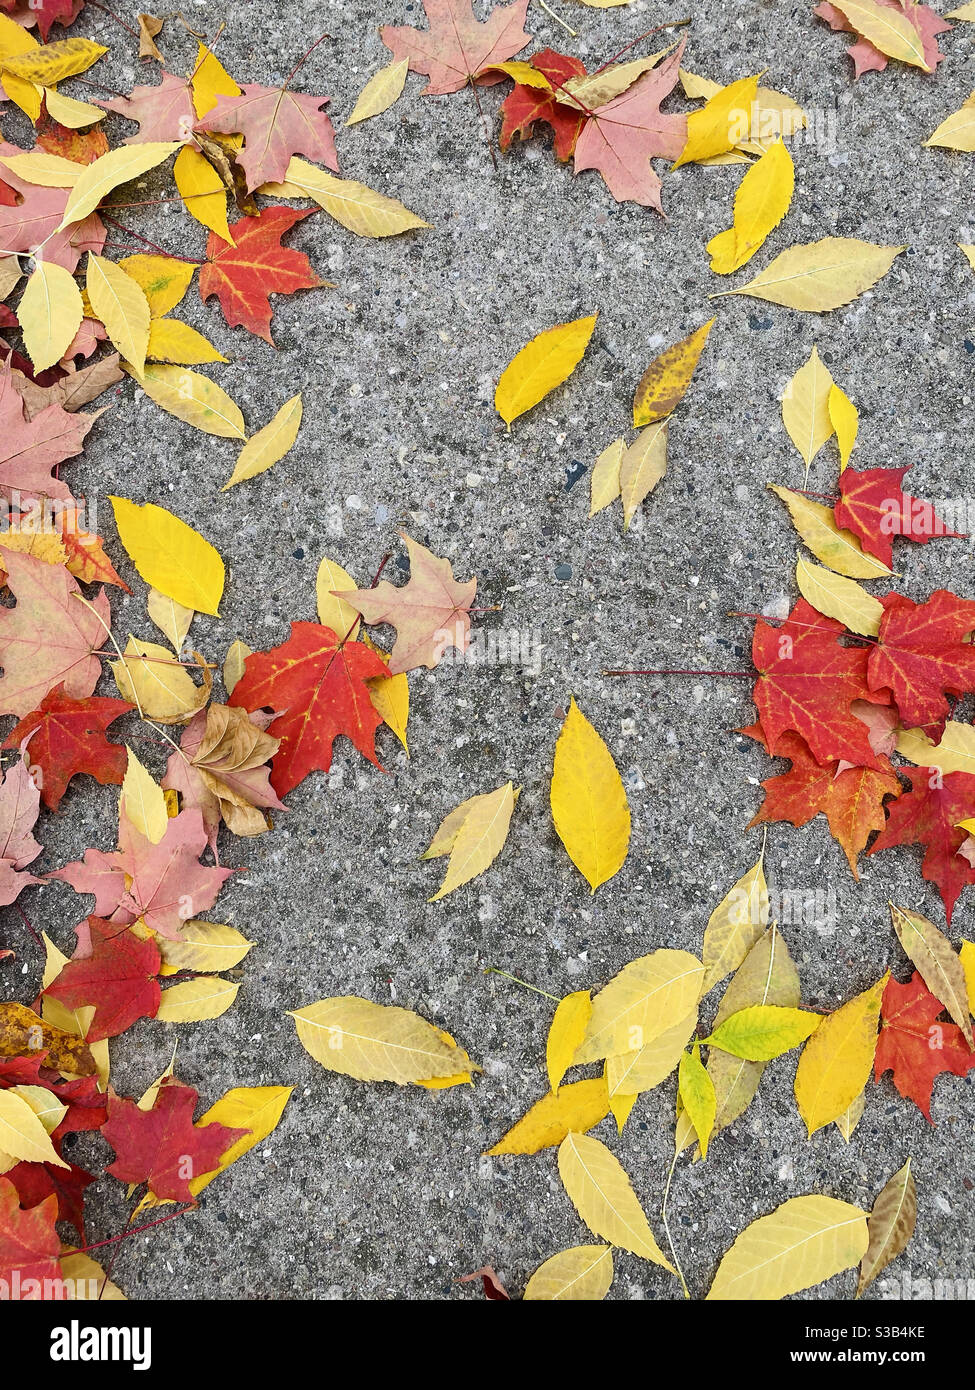 Feuilles d'automne colorées sur la chaussée Banque D'Images